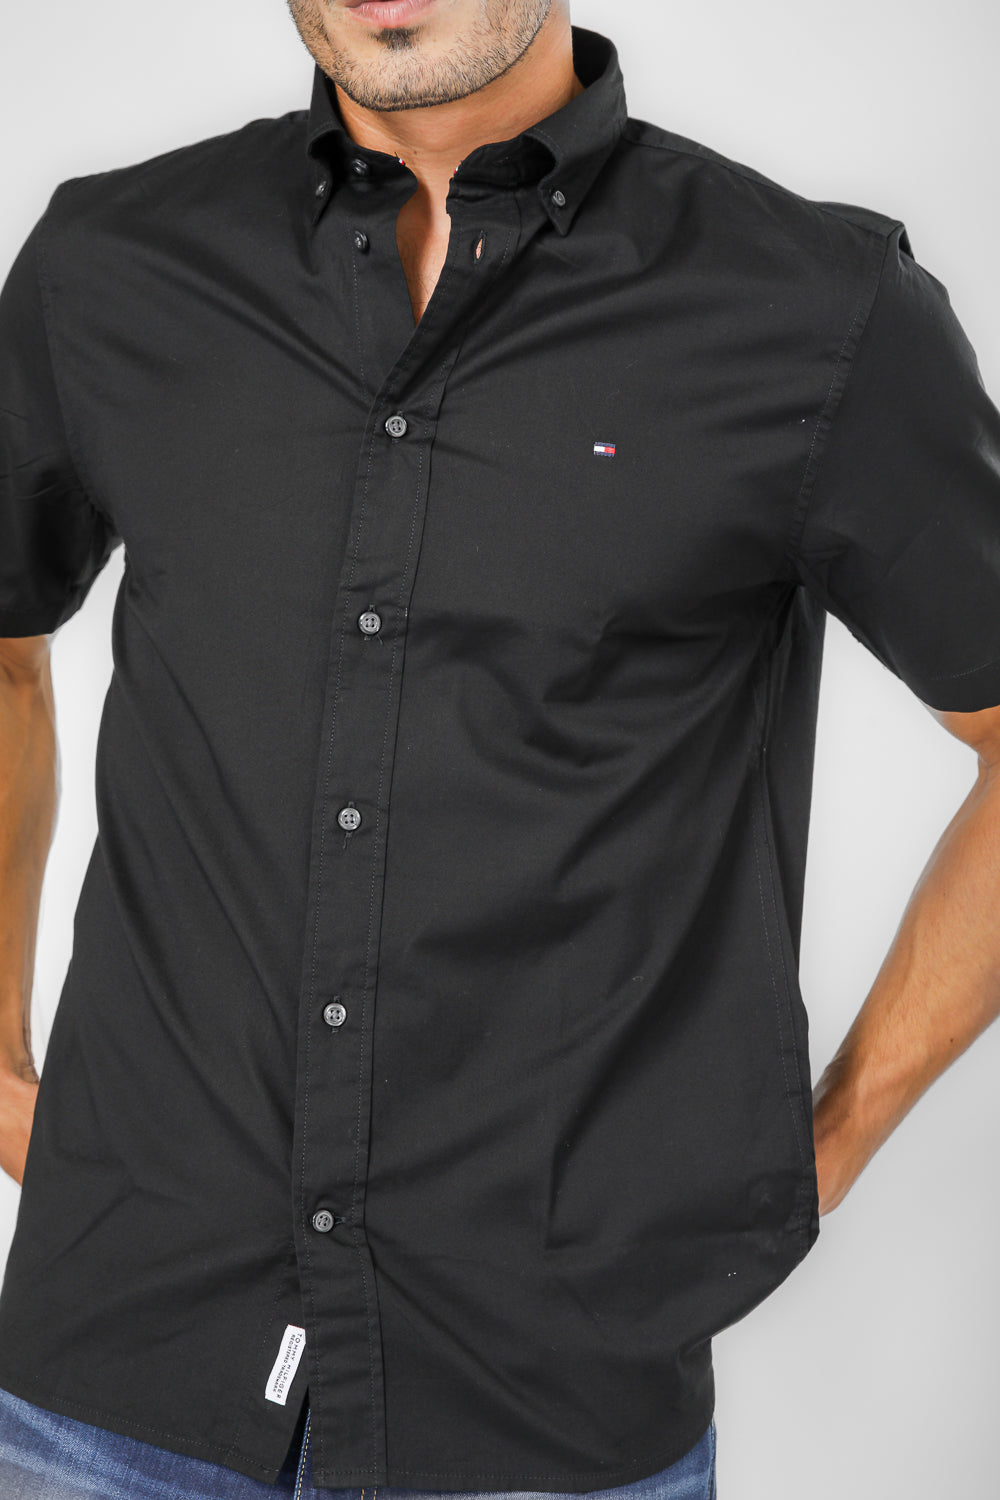 חולצה מכופתרת קצרה לגברים בצבע שחור